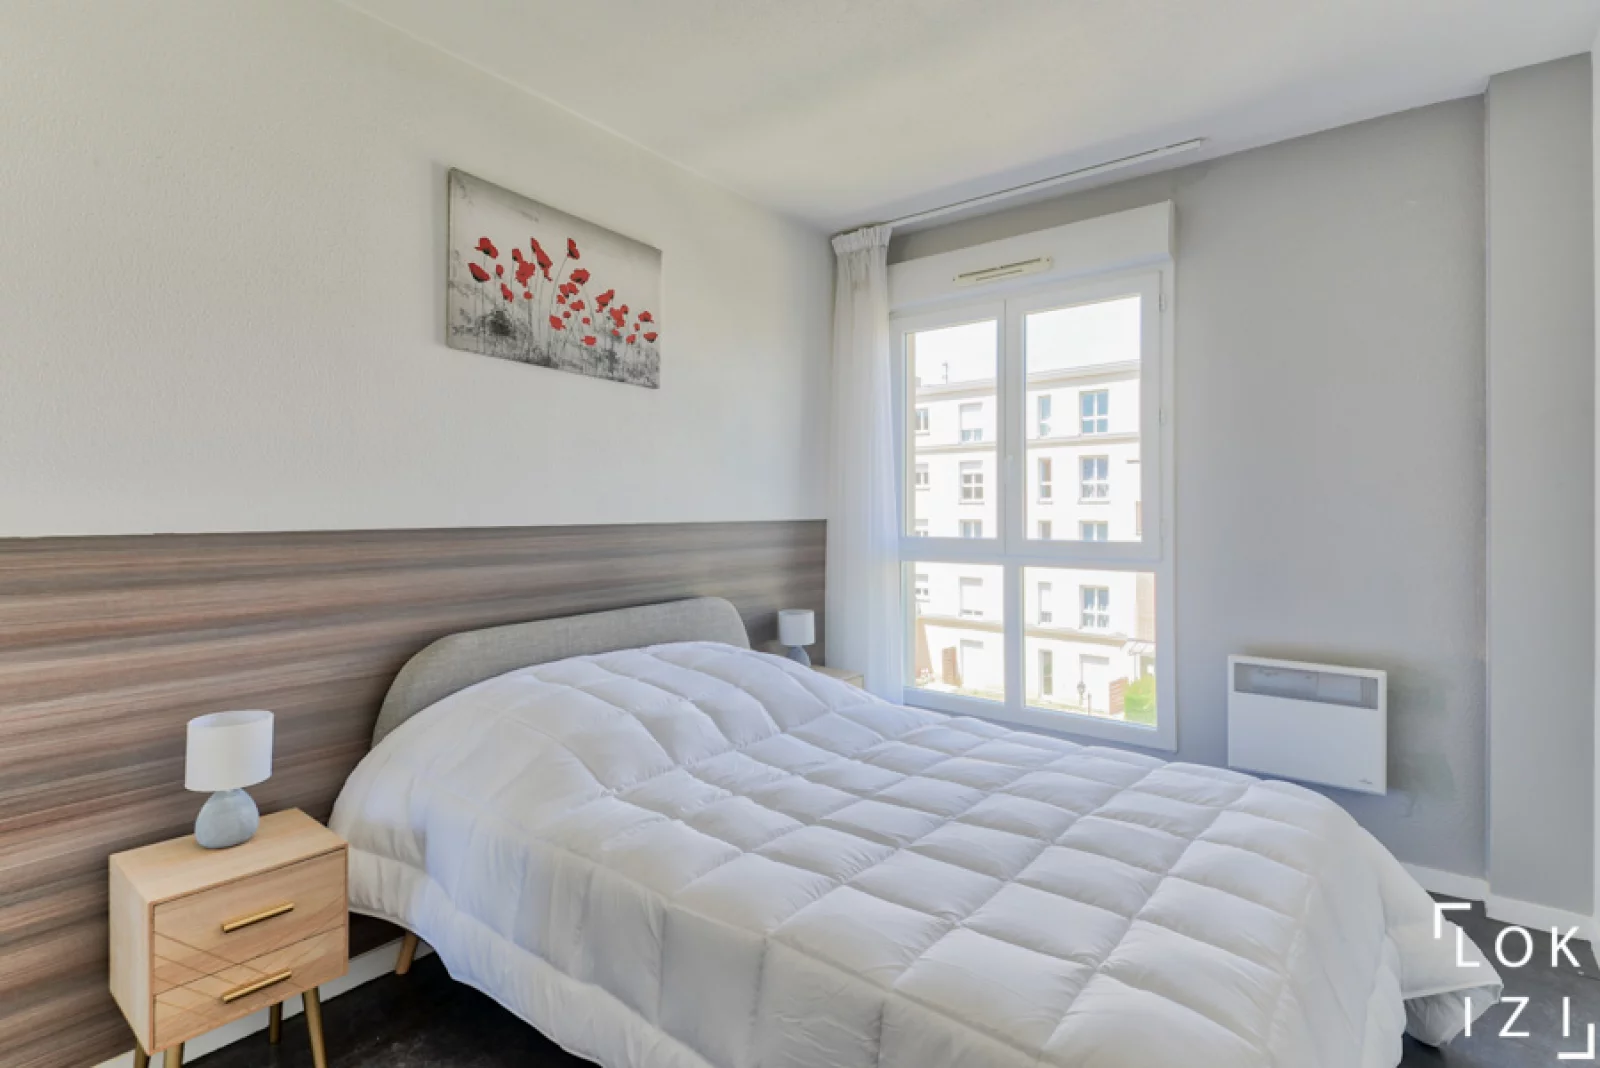  Location appartement duplex meubl 3 pices 67m (Paris est - Bry s/ Marne)